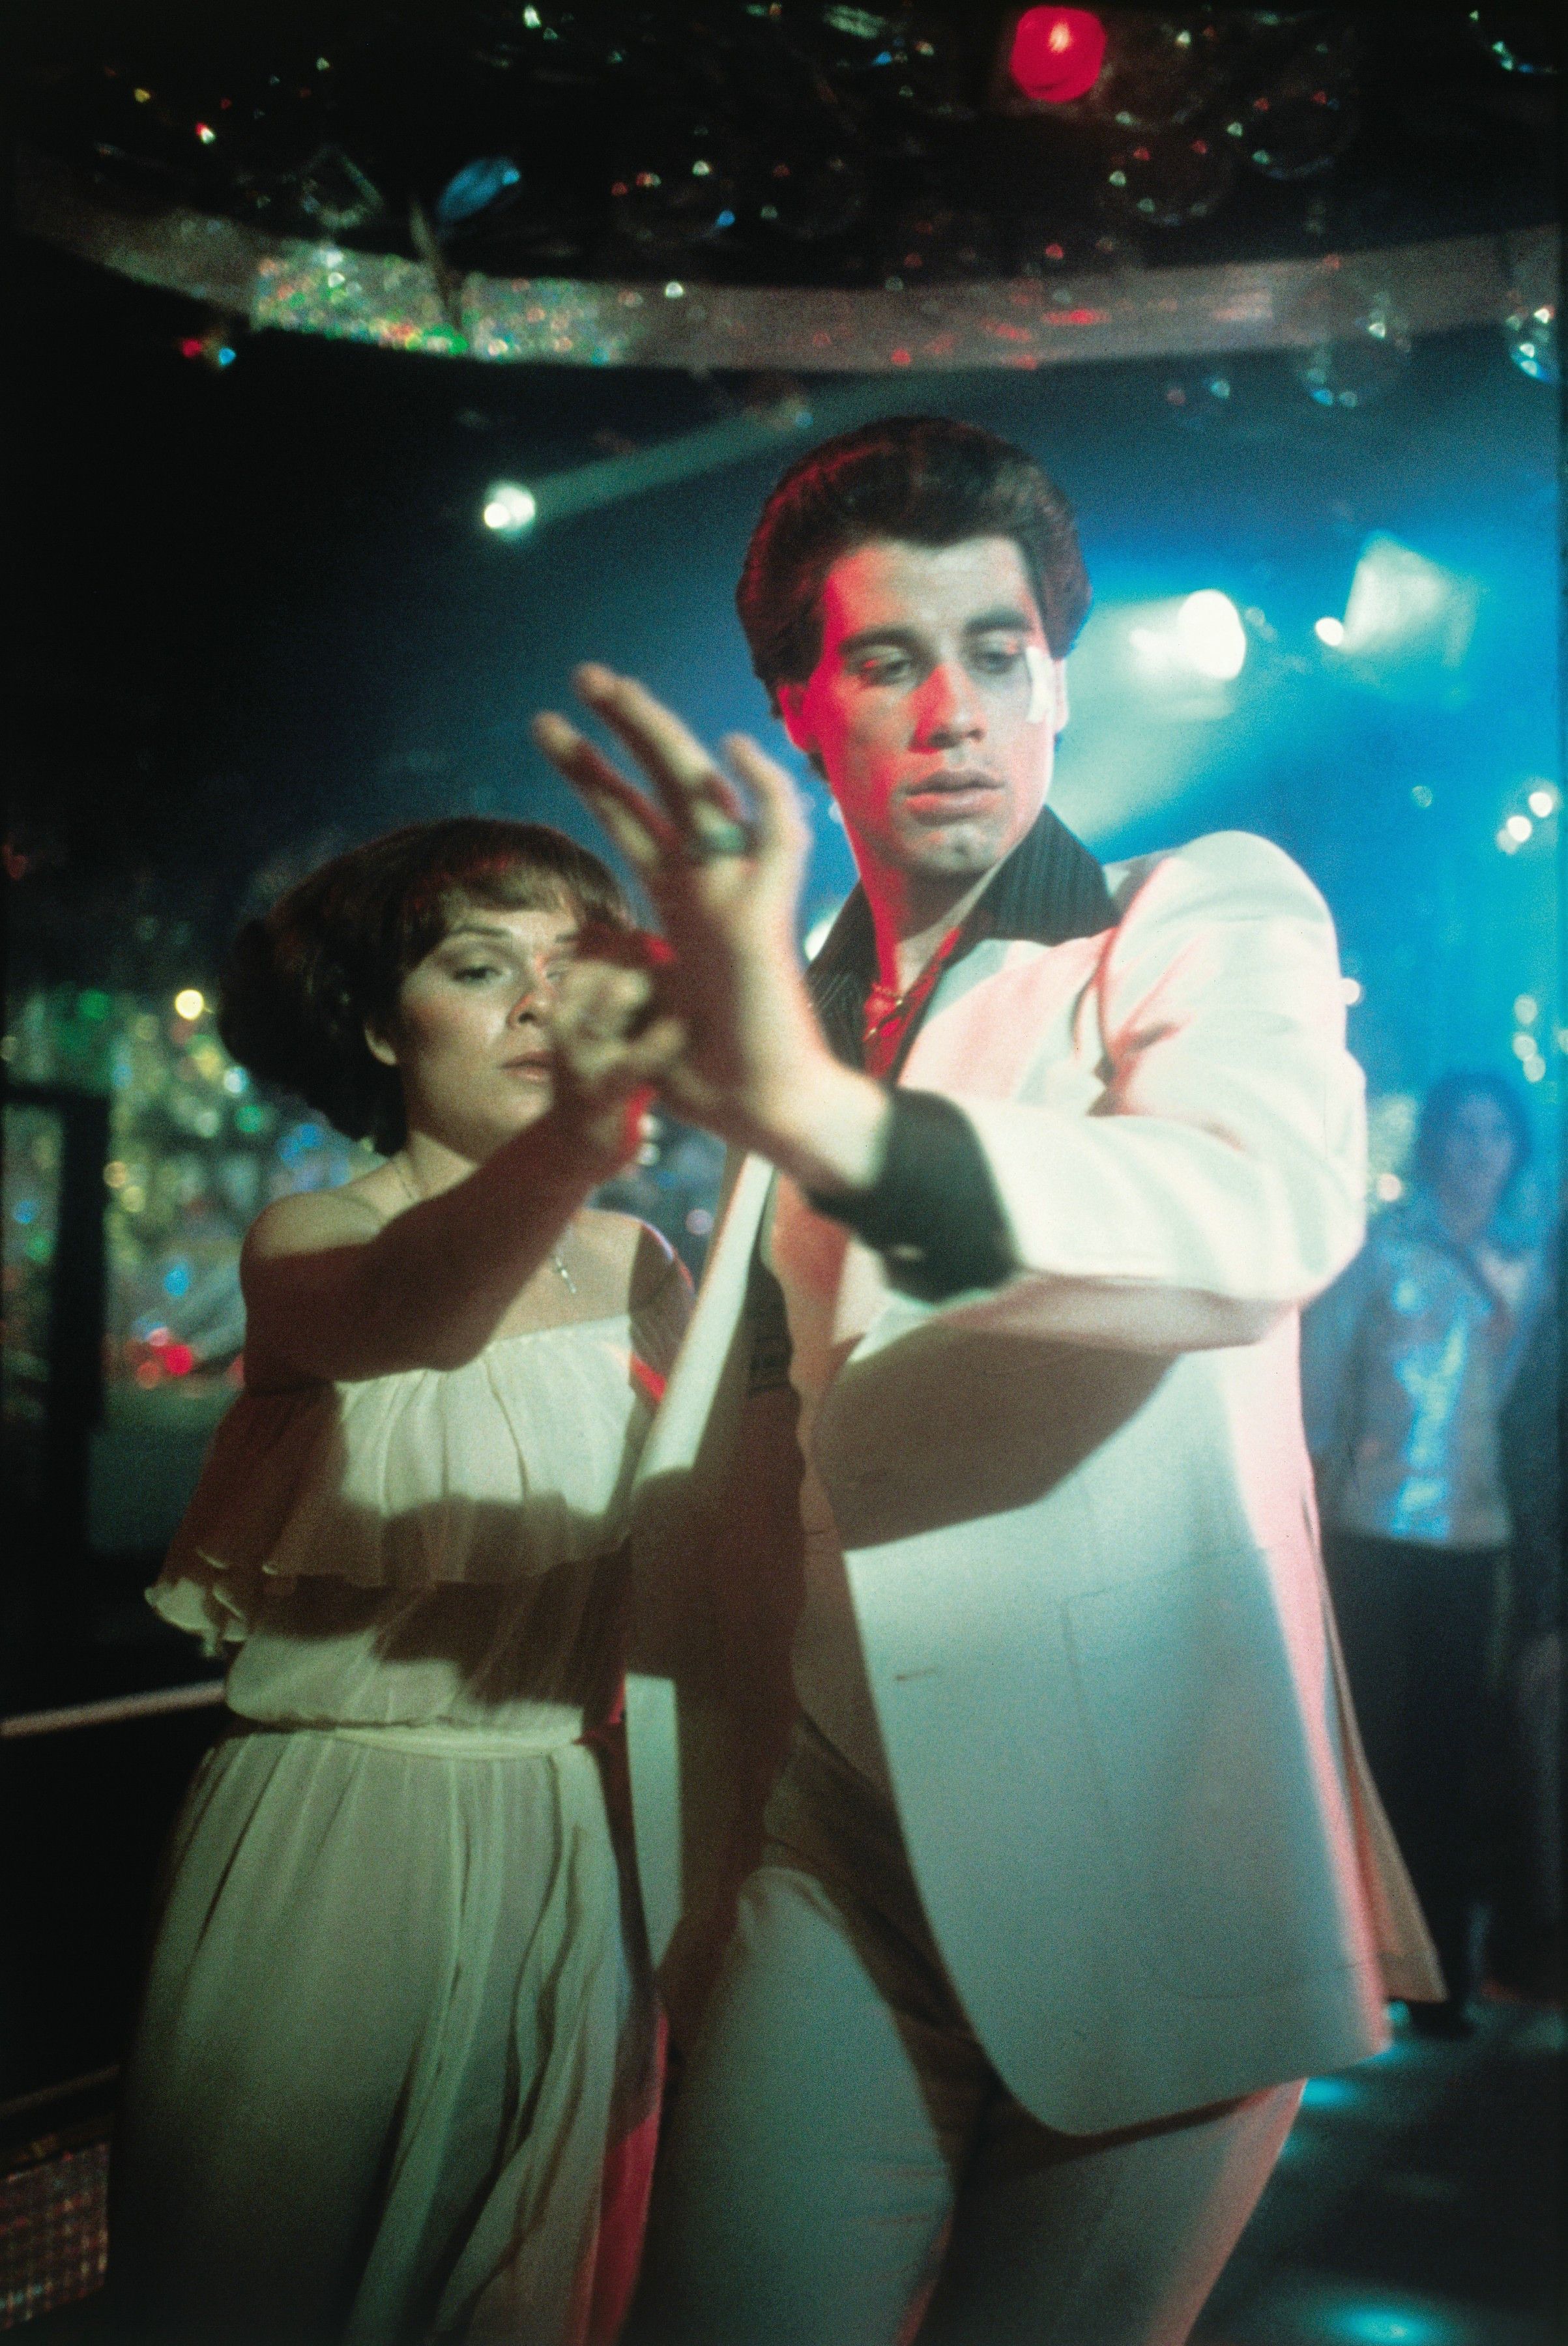 Saturday Night Fever: Travolta's White Disco Suit